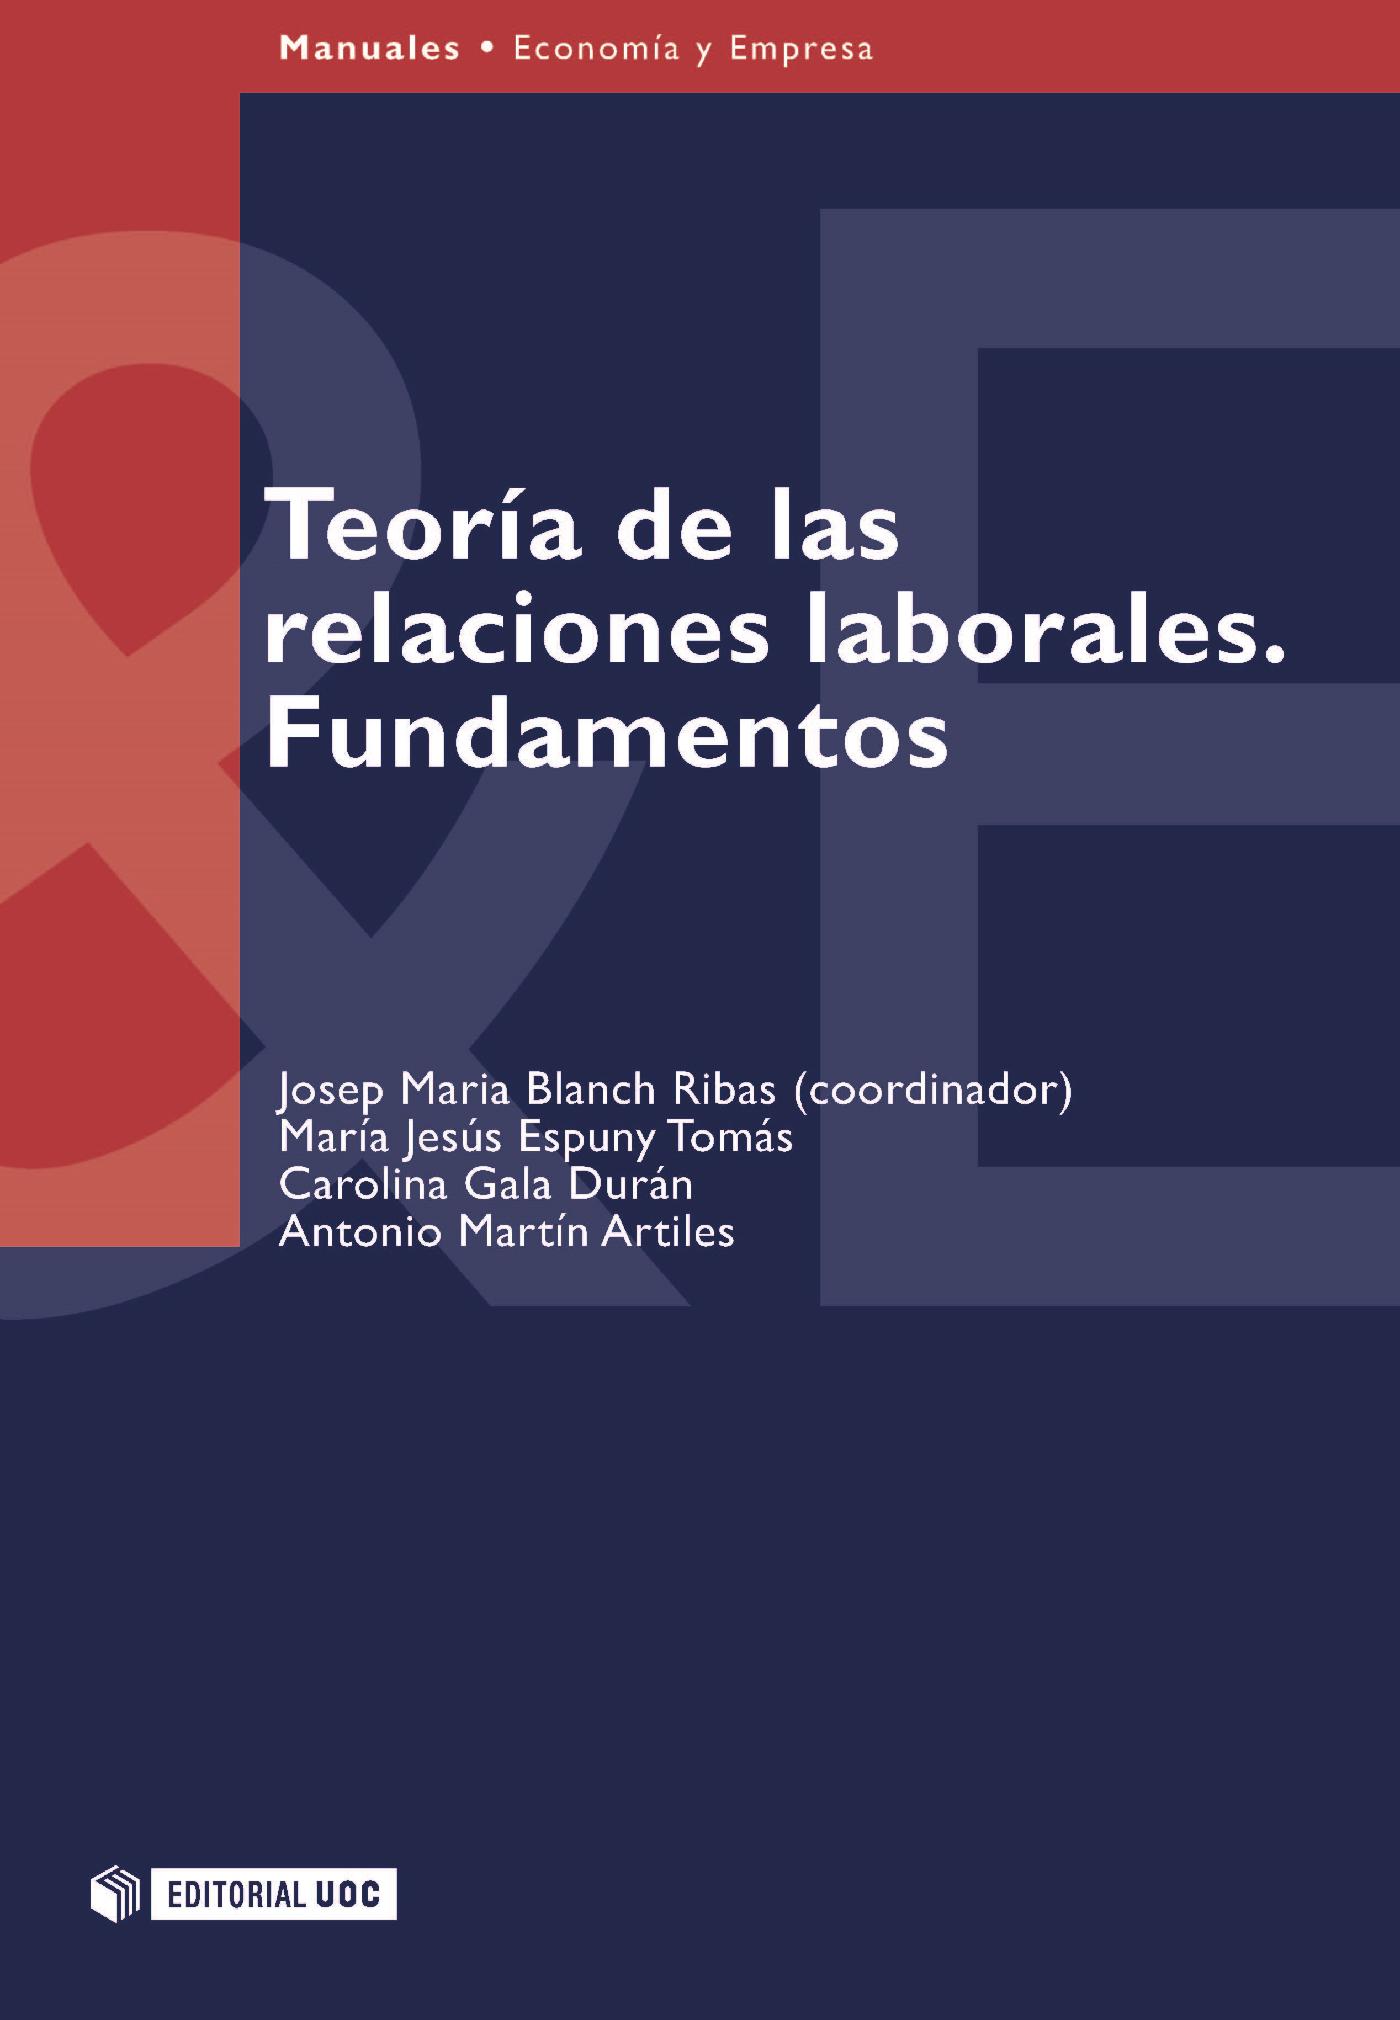 Teoría las relaciones laborales. Fundamentos Editorial UOC - Editorial de la Oberta de Catalunya